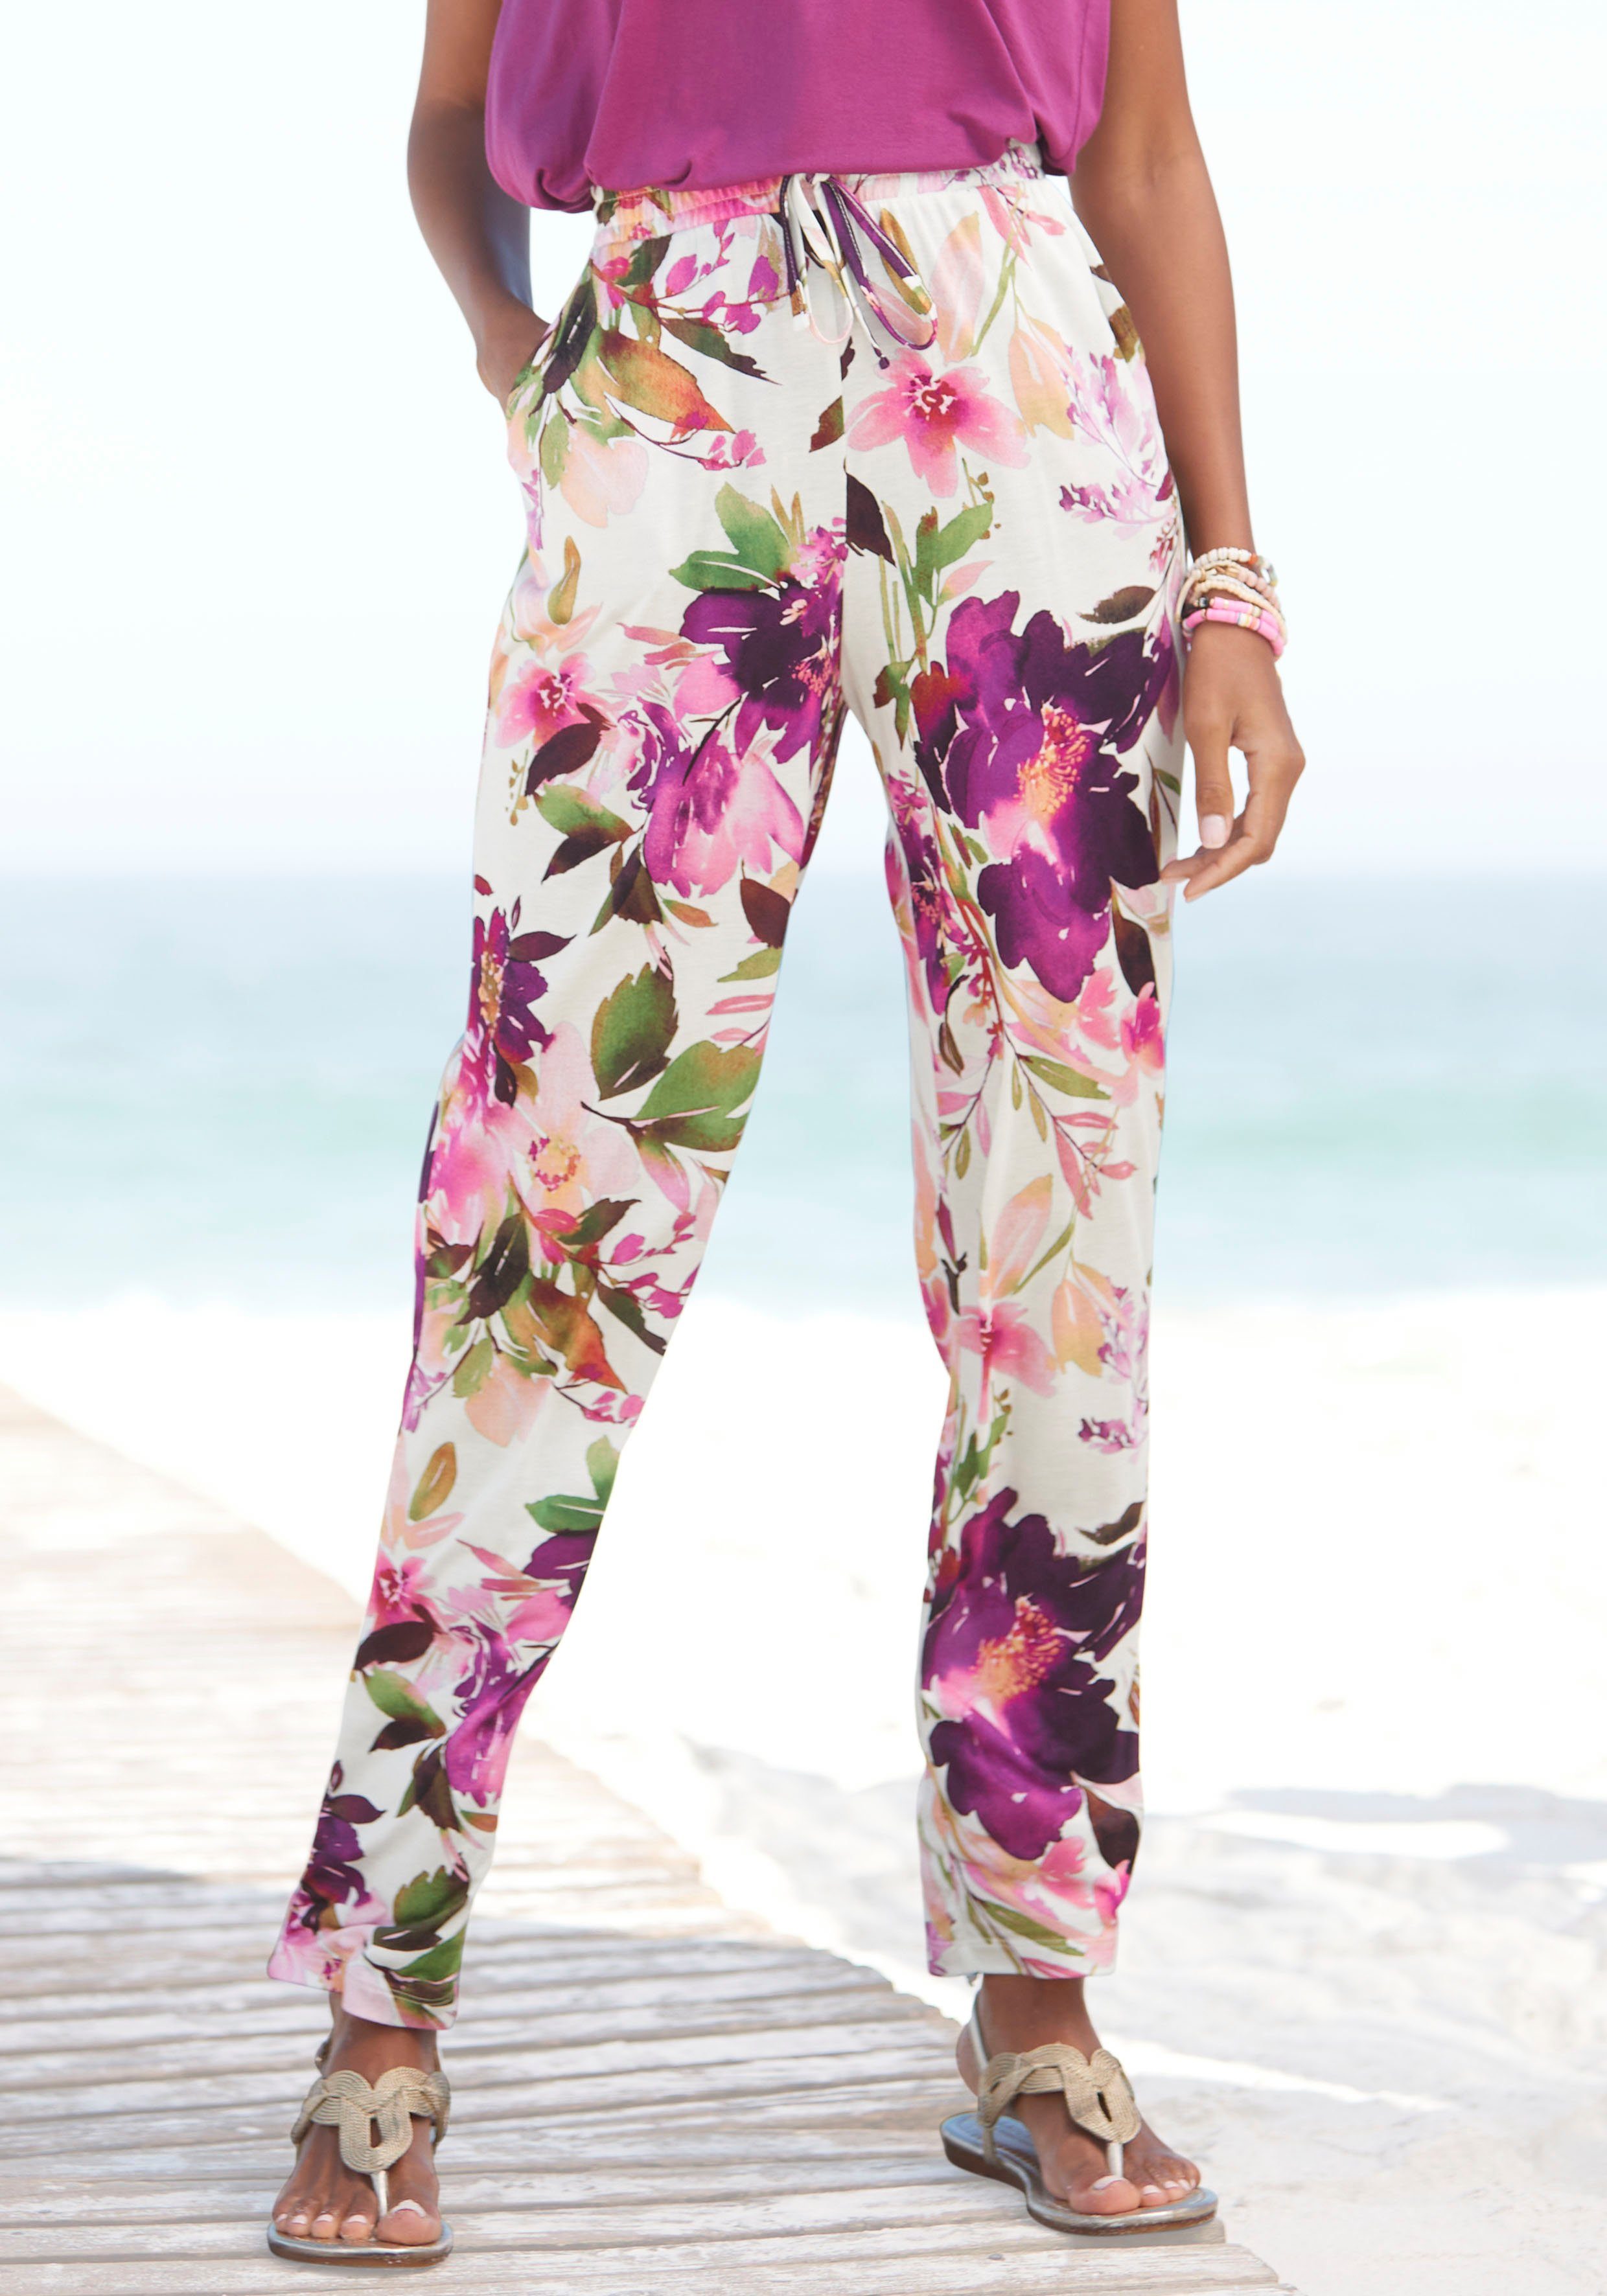 Beachtime Jerseyhose mit Blumendruck und elastischem Bund, Stoffhose, sommerlich, frisch